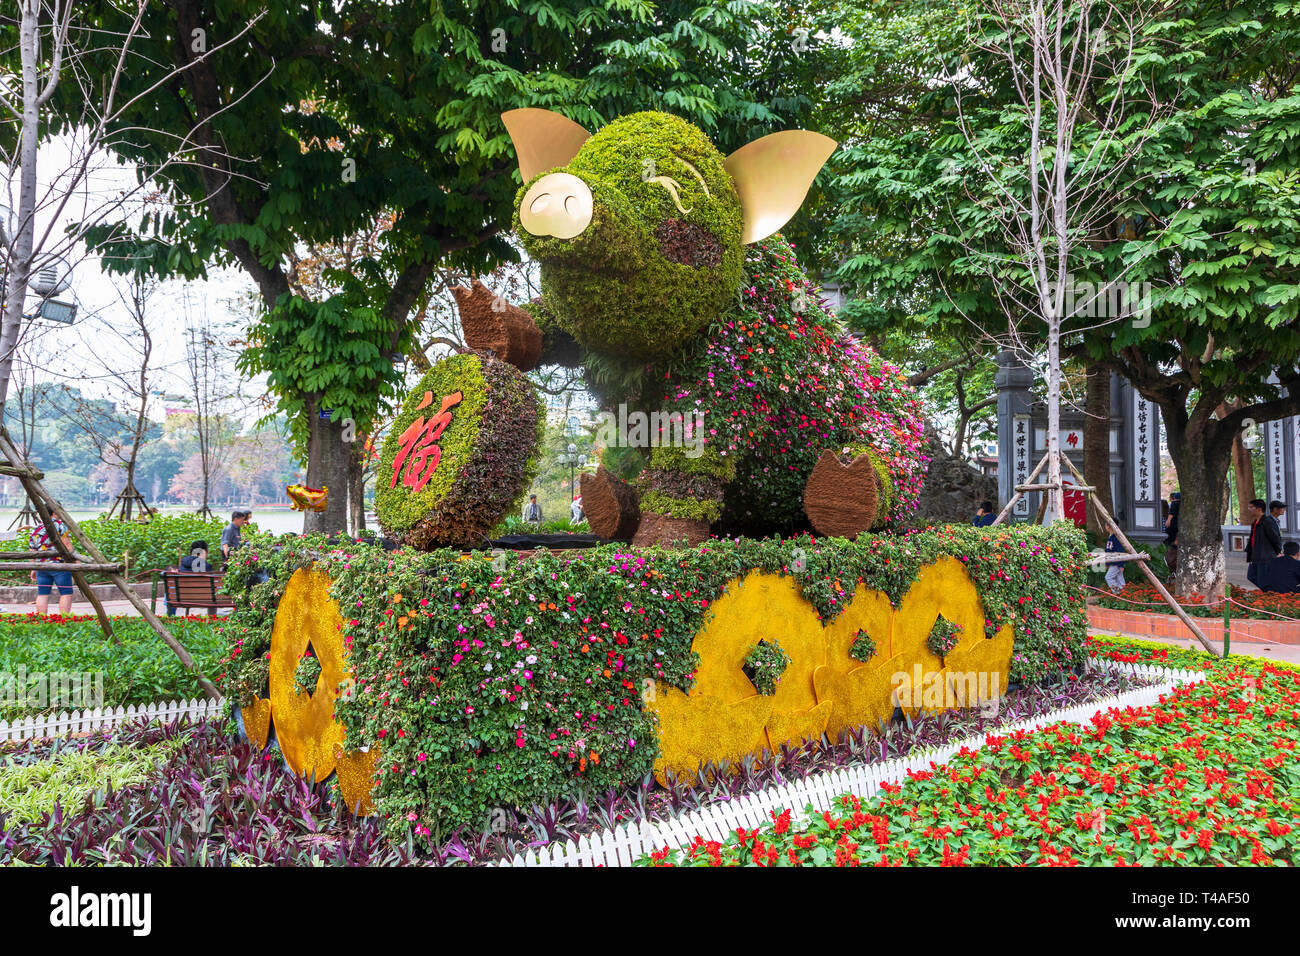 Statua di un suino come giardino decorazione per celebrare l anno del maiale in vietnamita Anno nuovo, il vecchio quartiere di Hanoi, Vietnam Asia Foto Stock